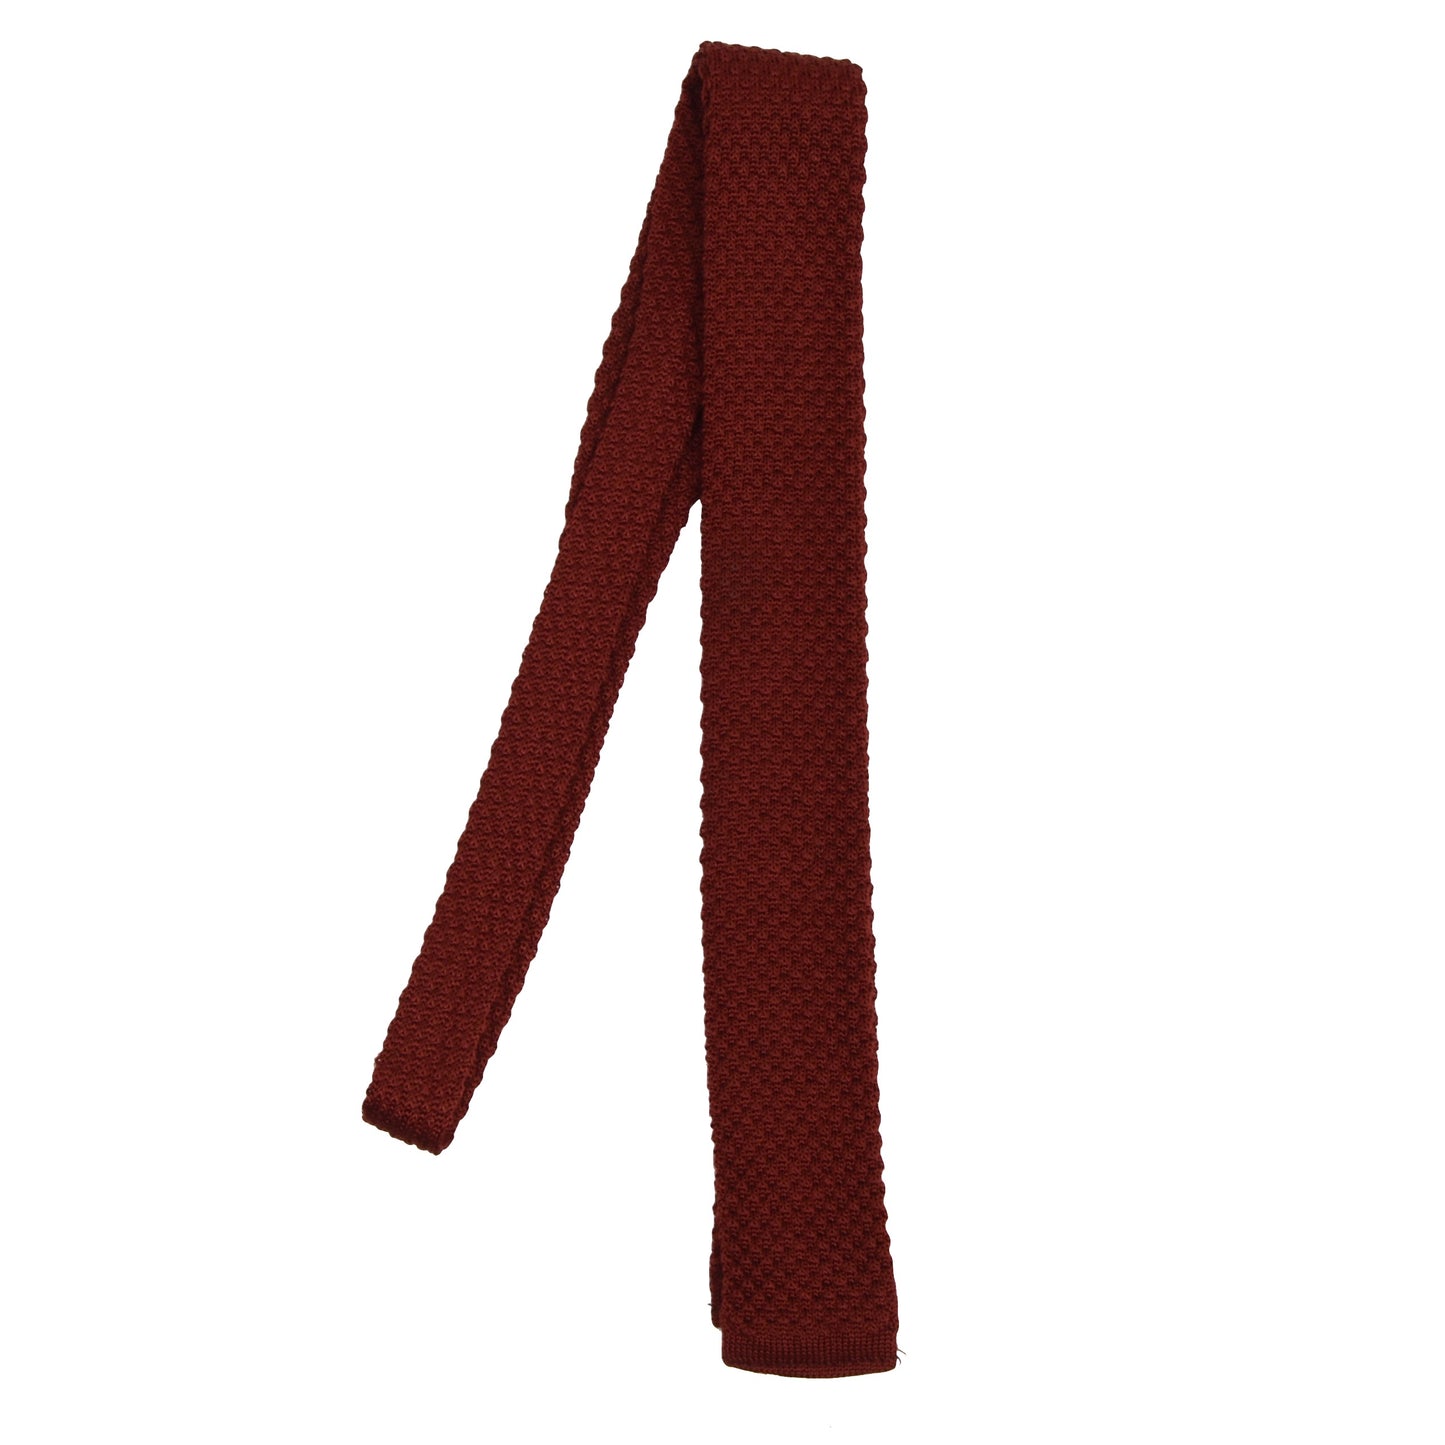 Vintage 100% Silk Knit Tie - Dark Red